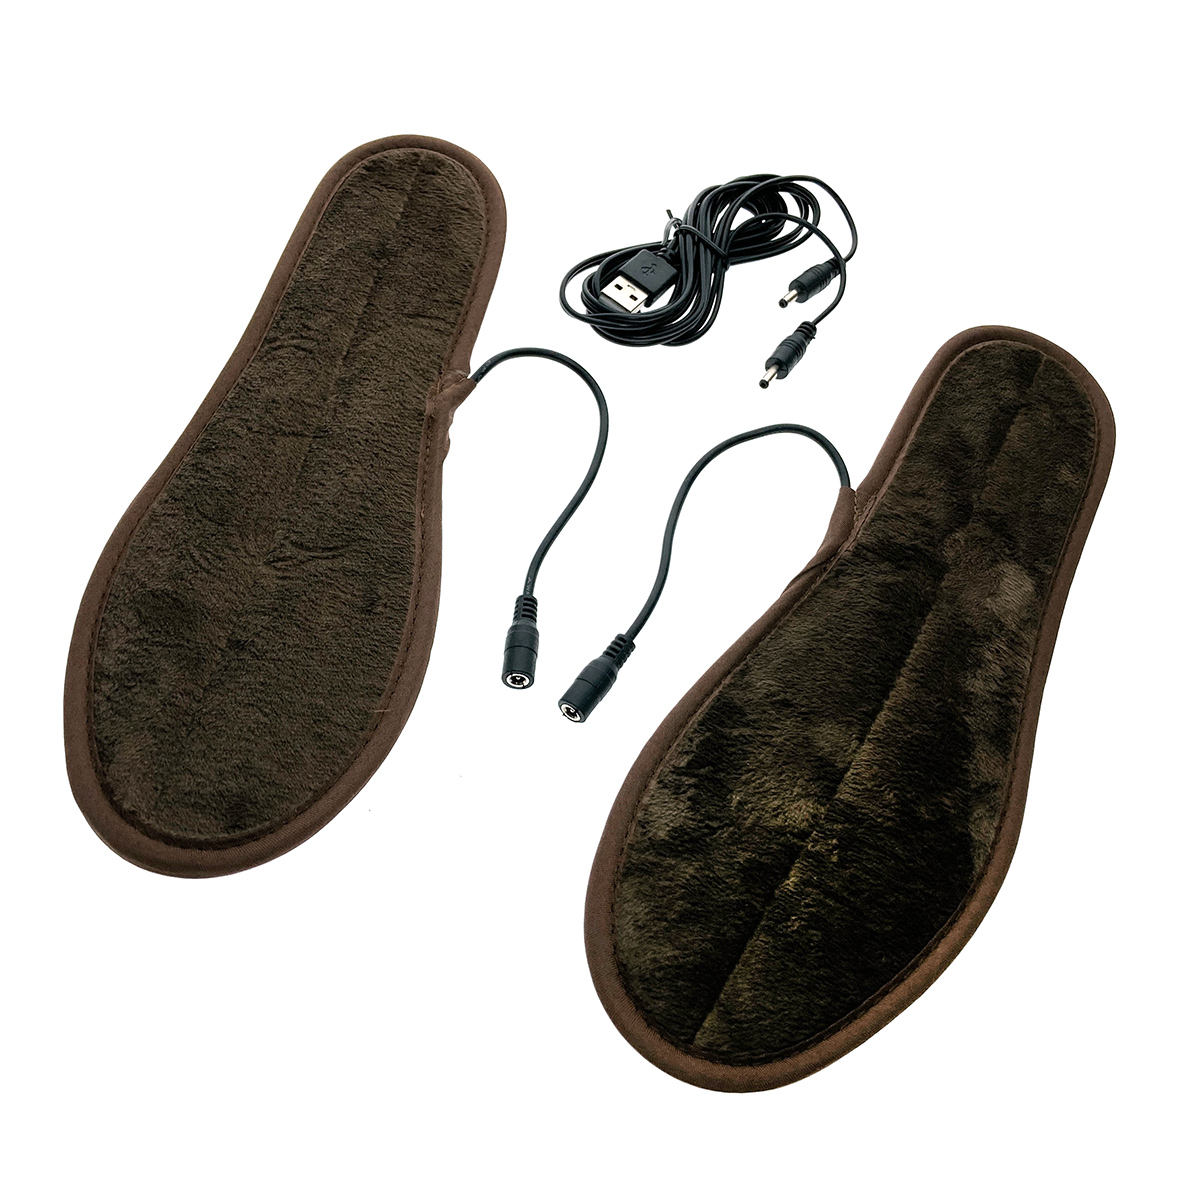 фото Стельки для обуви ins-2 espada с подогревом через usb, р. 42-43